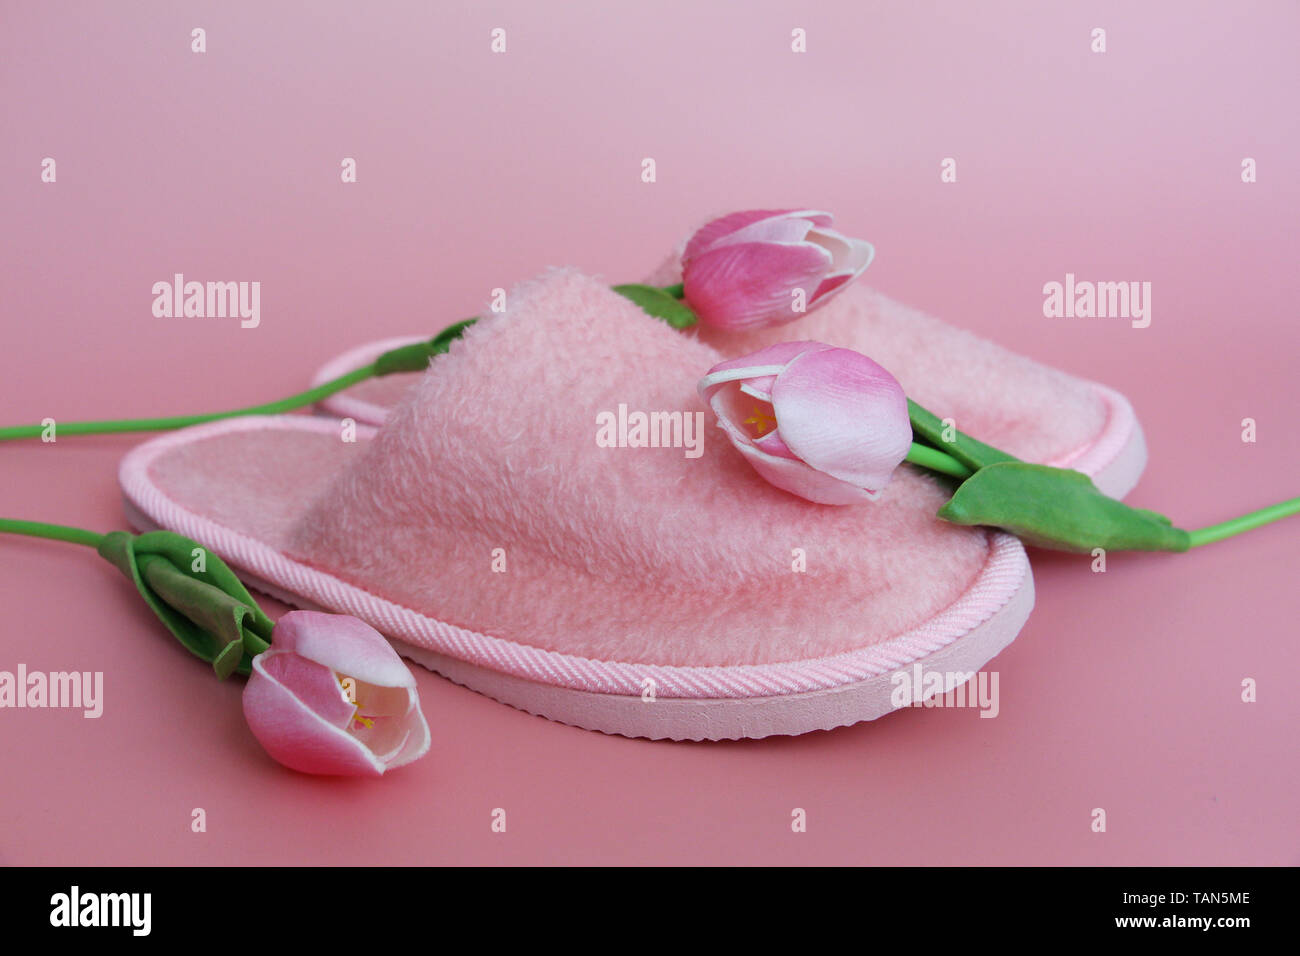 Chaussons rose sur un fond rose. A proximité, fleurs roses. Accueil terry chaussons et des tulipes sur fond rose. Banque D'Images